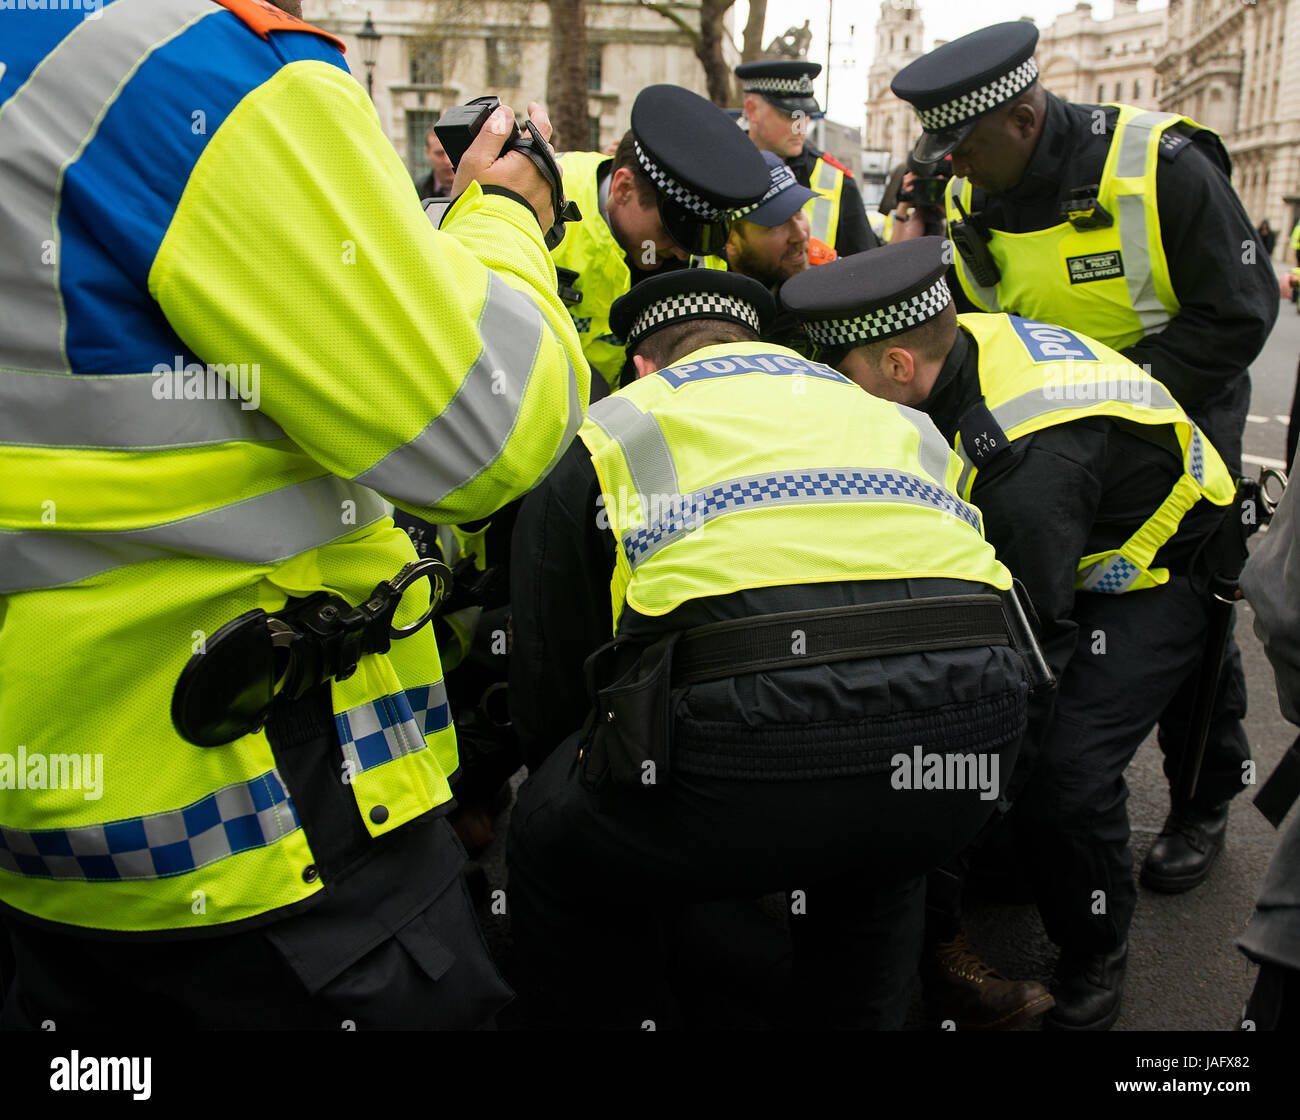 Los agentes de policía luchan con un manifestante en el rally EDL / Gran Bretaña Primero con la demo de contador del movimiento Unite Contra el fascismo en el centro de Londres. Foto de stock